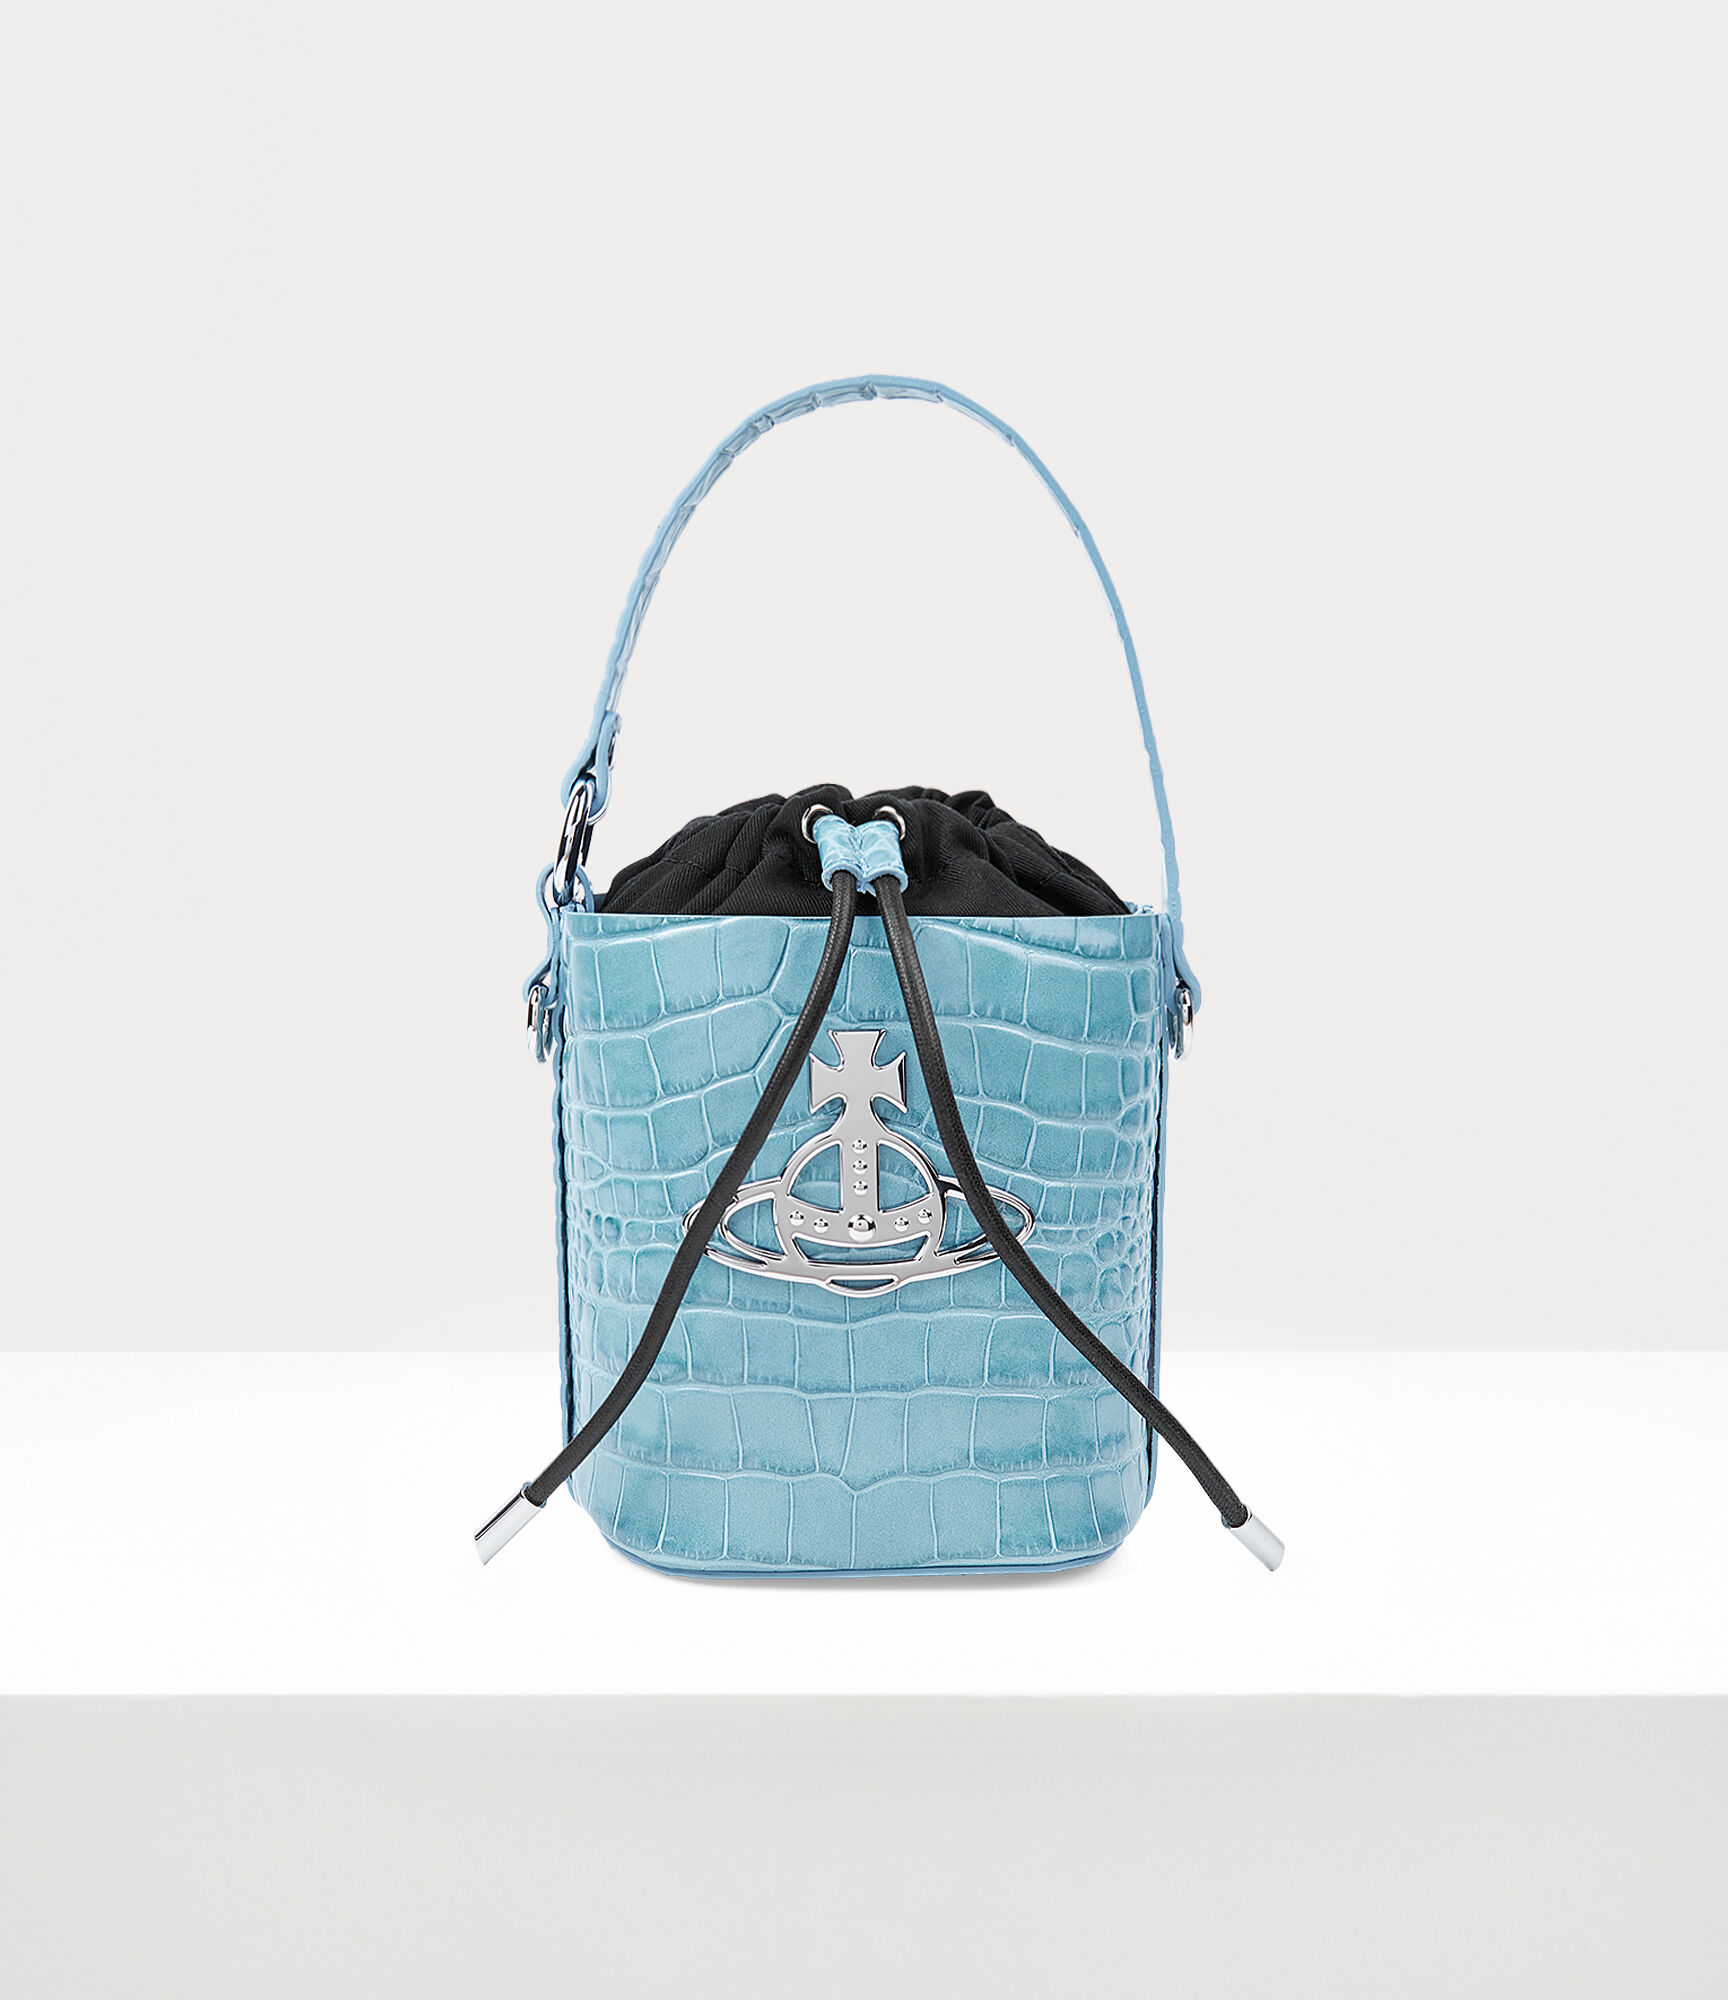 Buy SHAMRIZ Women's & Girl's Stylish Designer Sling Bag-Cross Body Handbags  | Women handbag | Women purse |Side Sling bag | Sling Bag - (Light Blue)  Online at Best Prices in India - JioMart.